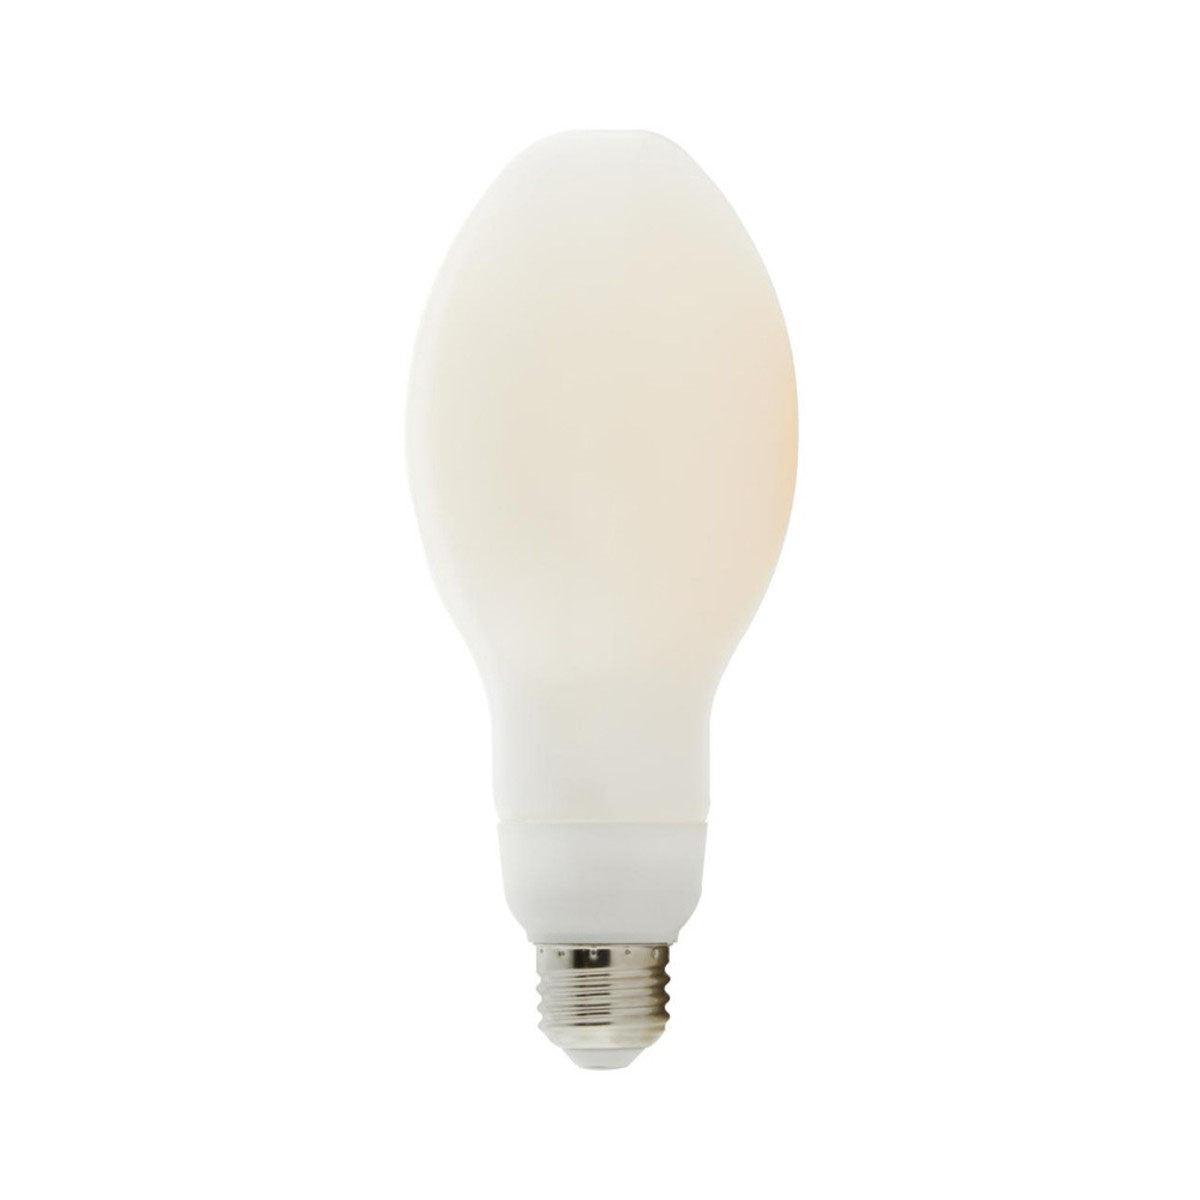 LED ED23 Bulb, 22 Watt, 3000 Lumens, 5000K, E26 Medium Base, Frosted Finish - Bees Lighting